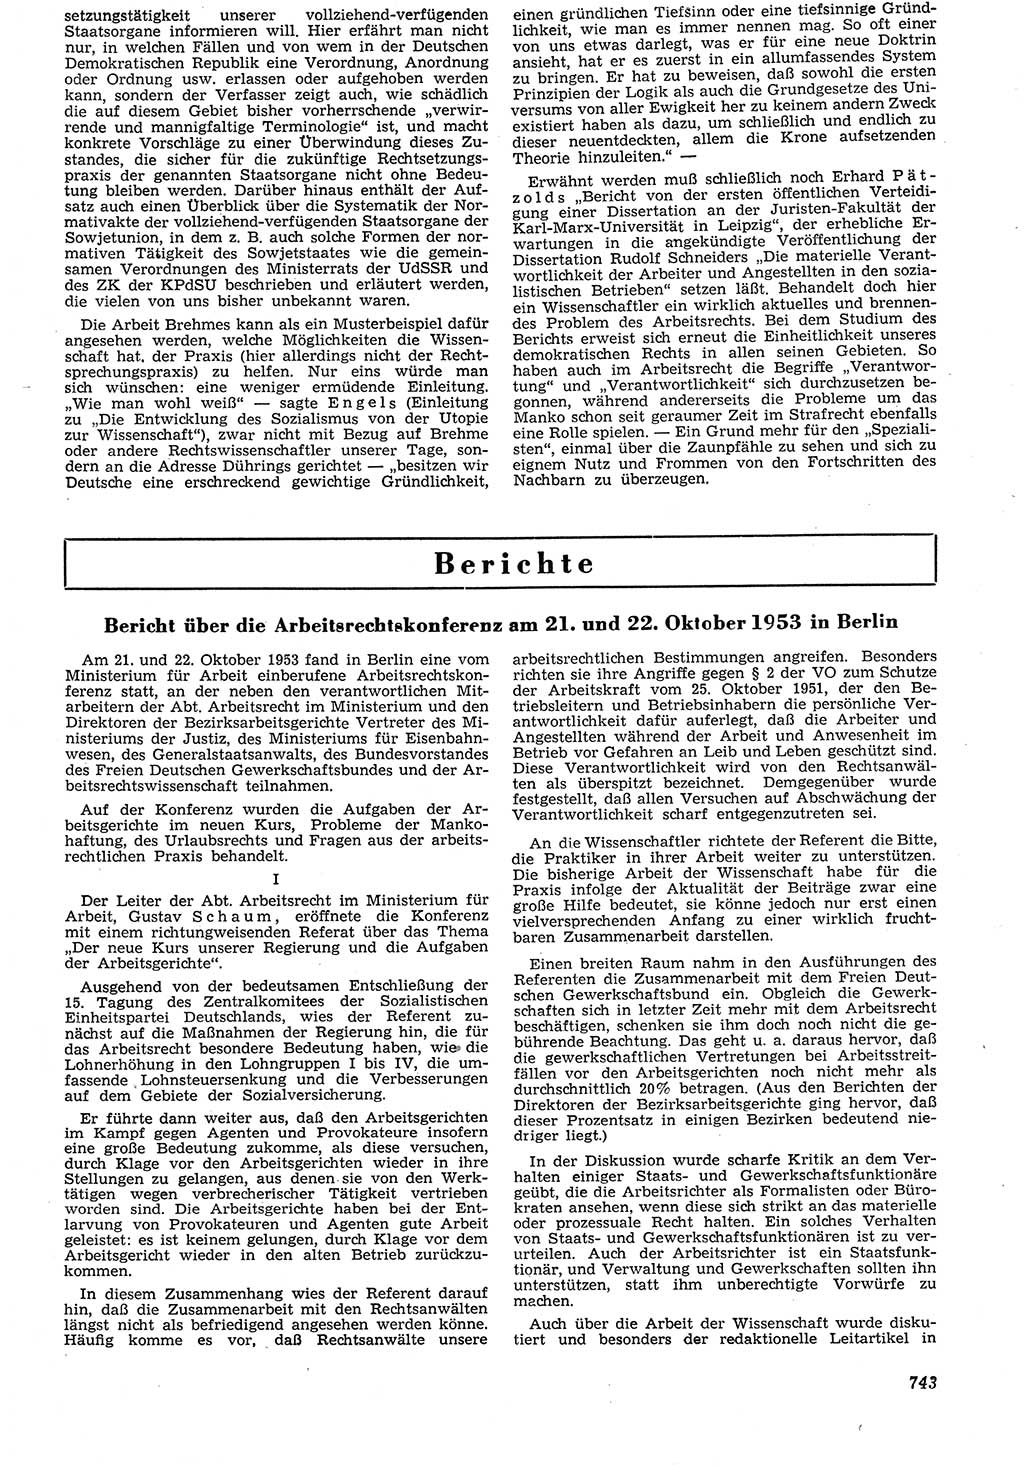 Neue Justiz (NJ), Zeitschrift für Recht und Rechtswissenschaft [Deutsche Demokratische Republik (DDR)], 7. Jahrgang 1953, Seite 743 (NJ DDR 1953, S. 743)